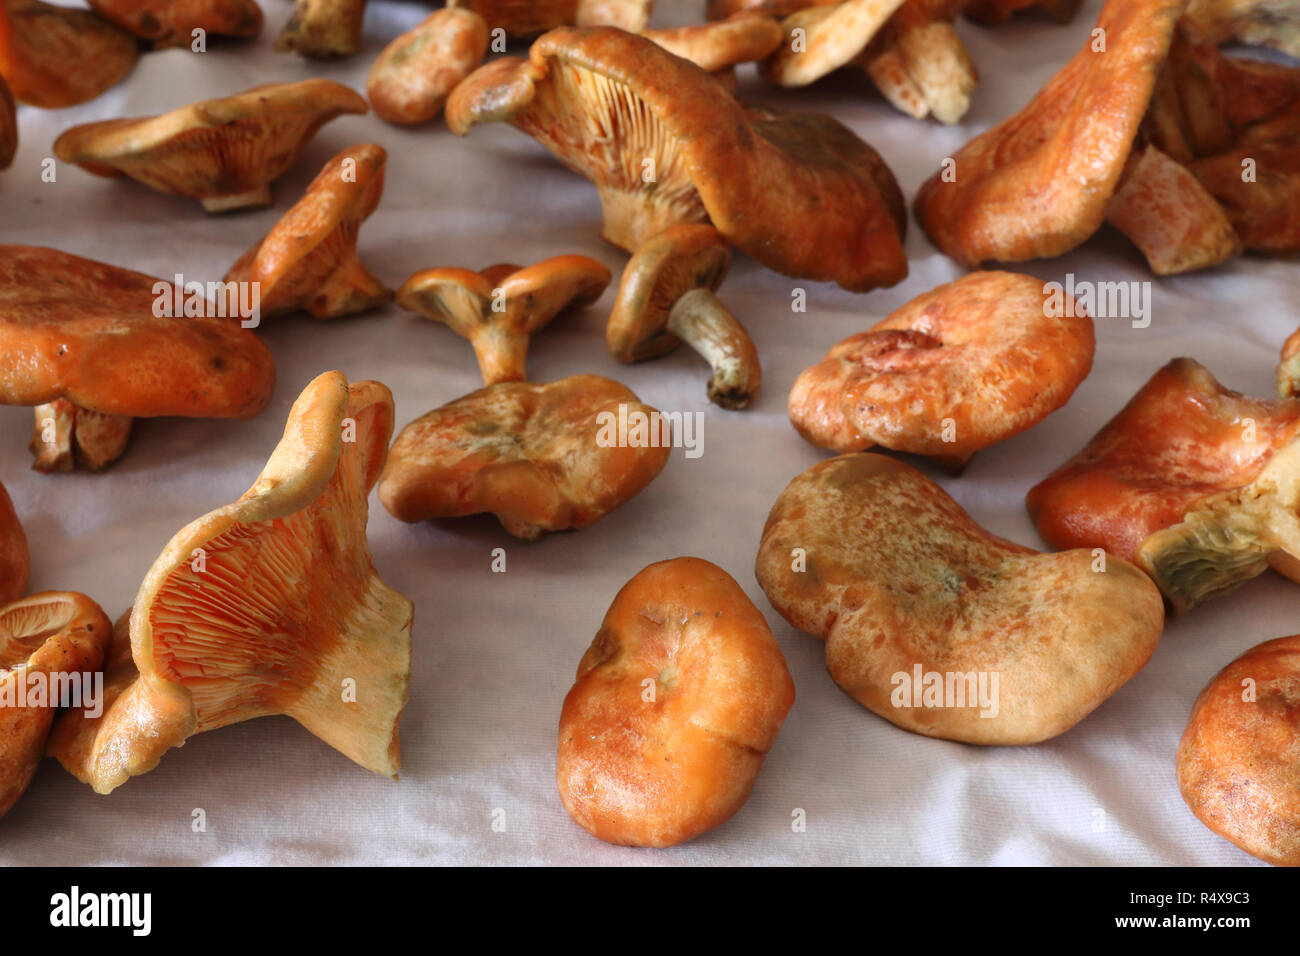 Some wet saffron milk cap mushrooms (Lactarius deliciosus), very similar to Lactarius sanguifluus and Lactarius deterrimus, drying on a cloth Stock Photo